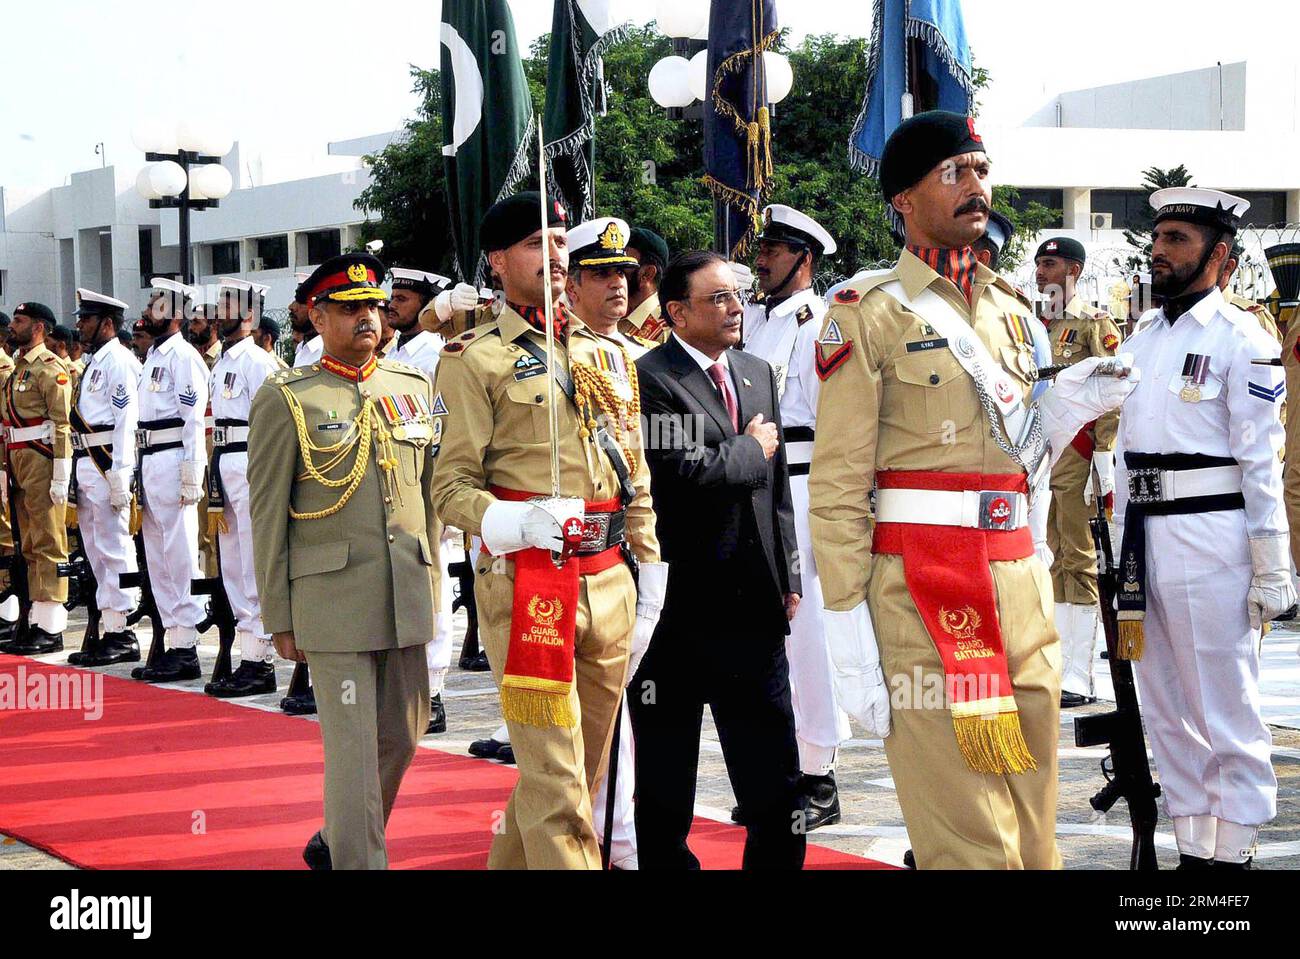 (130909) -- ISLAMABAD, 8 septembre 2013 (Xinhua) -- le président pakistanais Asif Ali Zardari (C) inspecte les gardes d'honneur lors de sa cérémonie d'adieu au palais présidentiel à Islamabad, capitale du Pakistan, le 8 septembre 2013. Le président pakistanais, Asif Ali Zardari, a démissionné dimanche à la fin de son mandat constitutionnel de cinq ans. (Xinhua/Saadia Seher) PAKISTAN-ISLAMABAD-PRESIDENT PUBLICATIONxNOTxINxCHN Banque D'Images